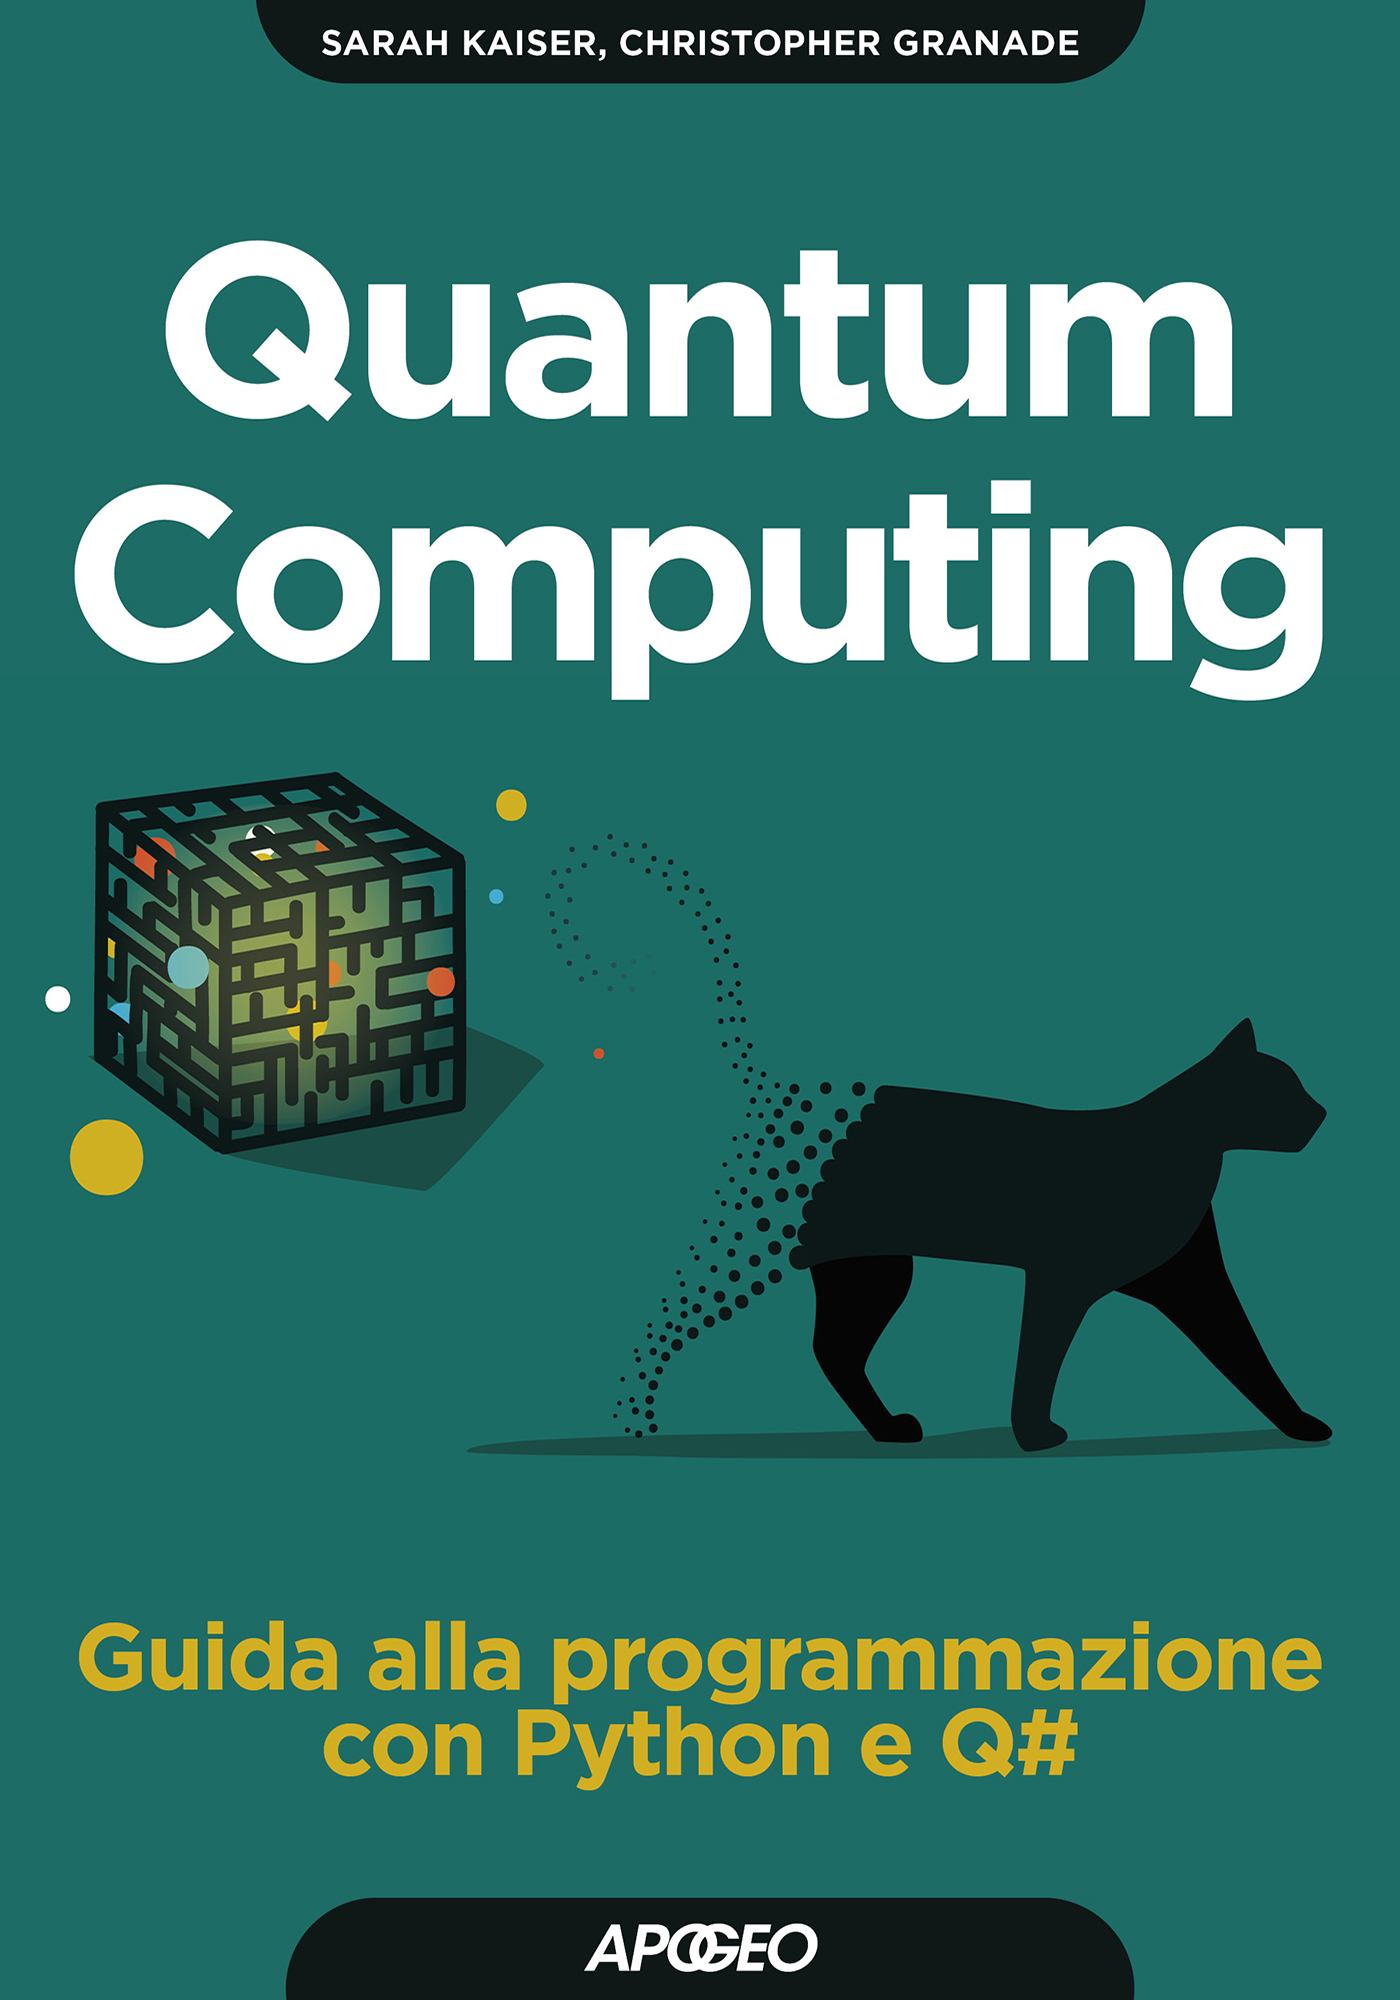 Quantum Computing - Guida alla programmazione con Python e Q#, di Sarah Kaiser e Christopher Granade